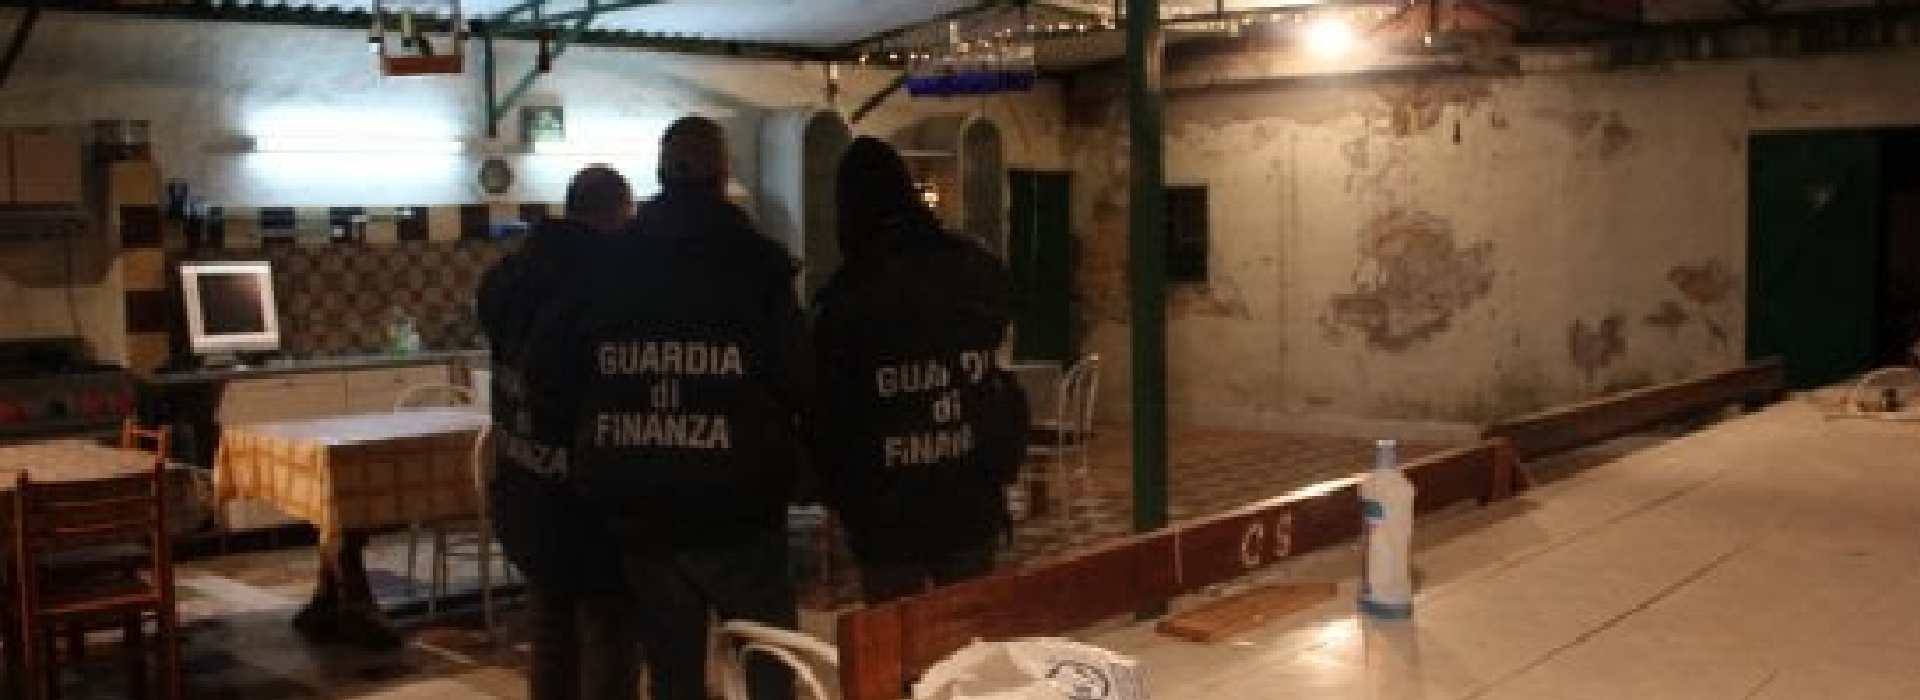 Mafia, blitz in 9 regioni: 91 gli arresti. Boss pronti a sfruttare emergenza Covid